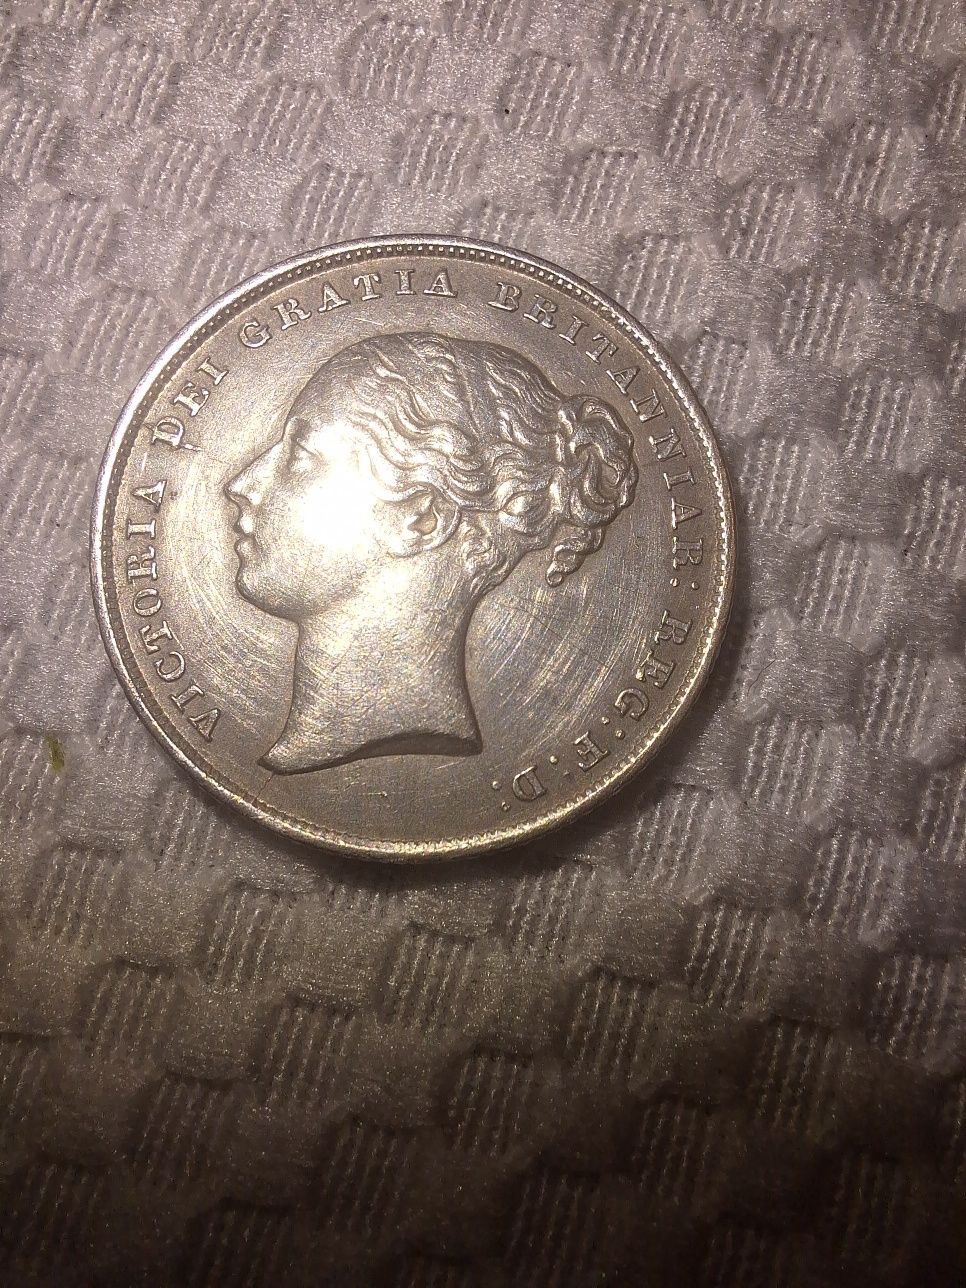 Един шилинг ONE SHILLING 1846 монета